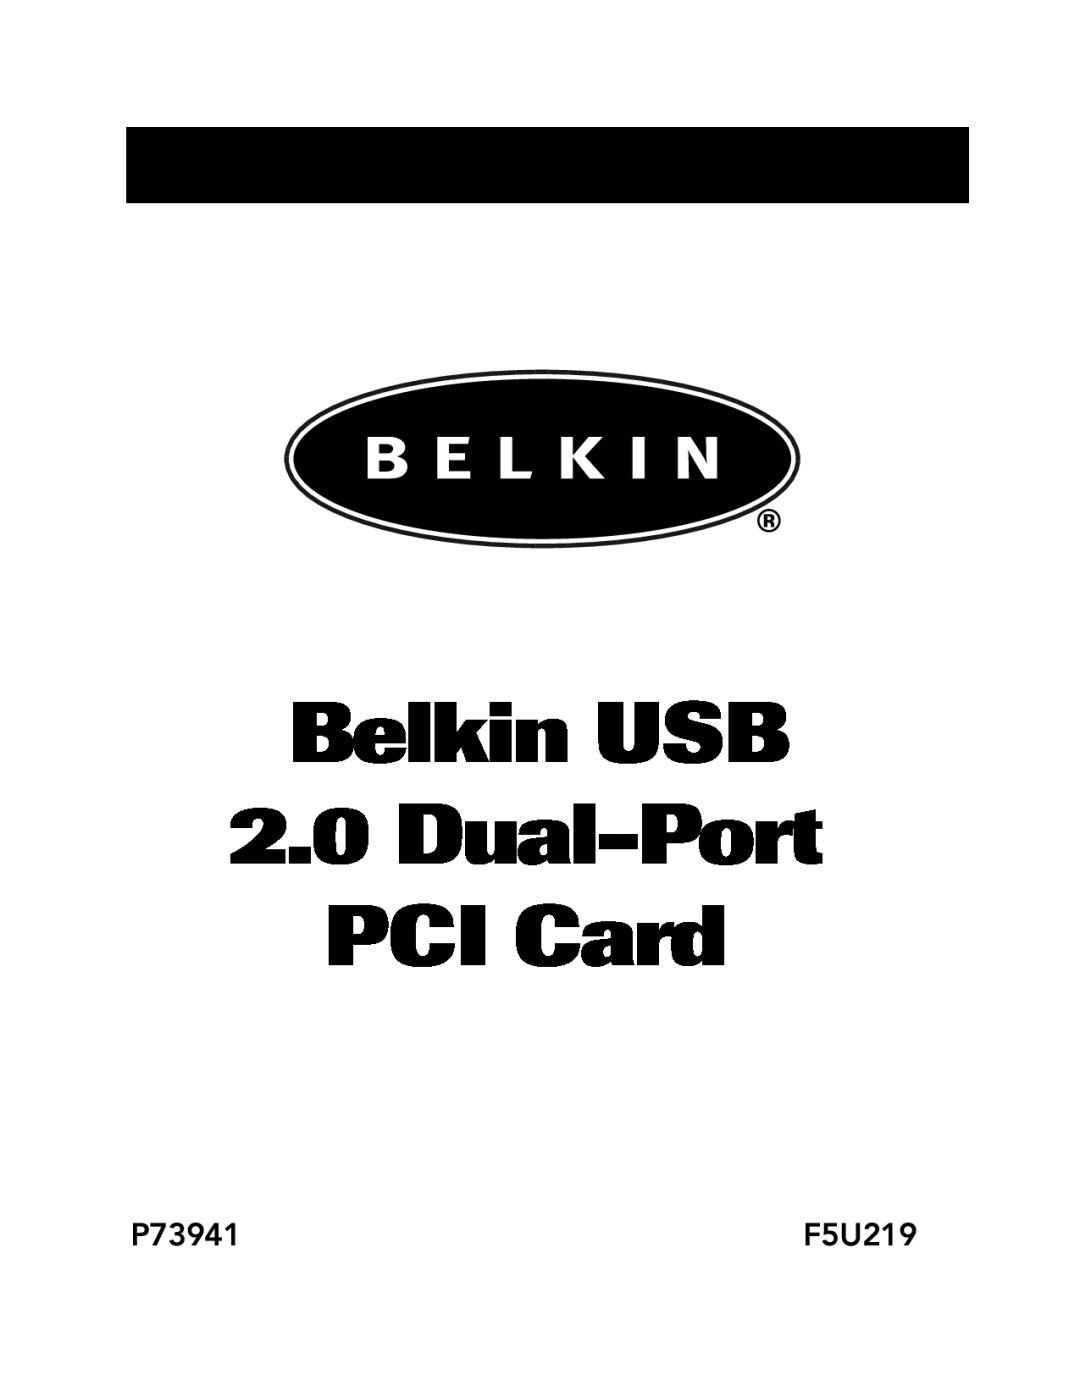 Belkin P73941 manual Belkin USB 2.0 Dual-Port PCI Card, F5U219 